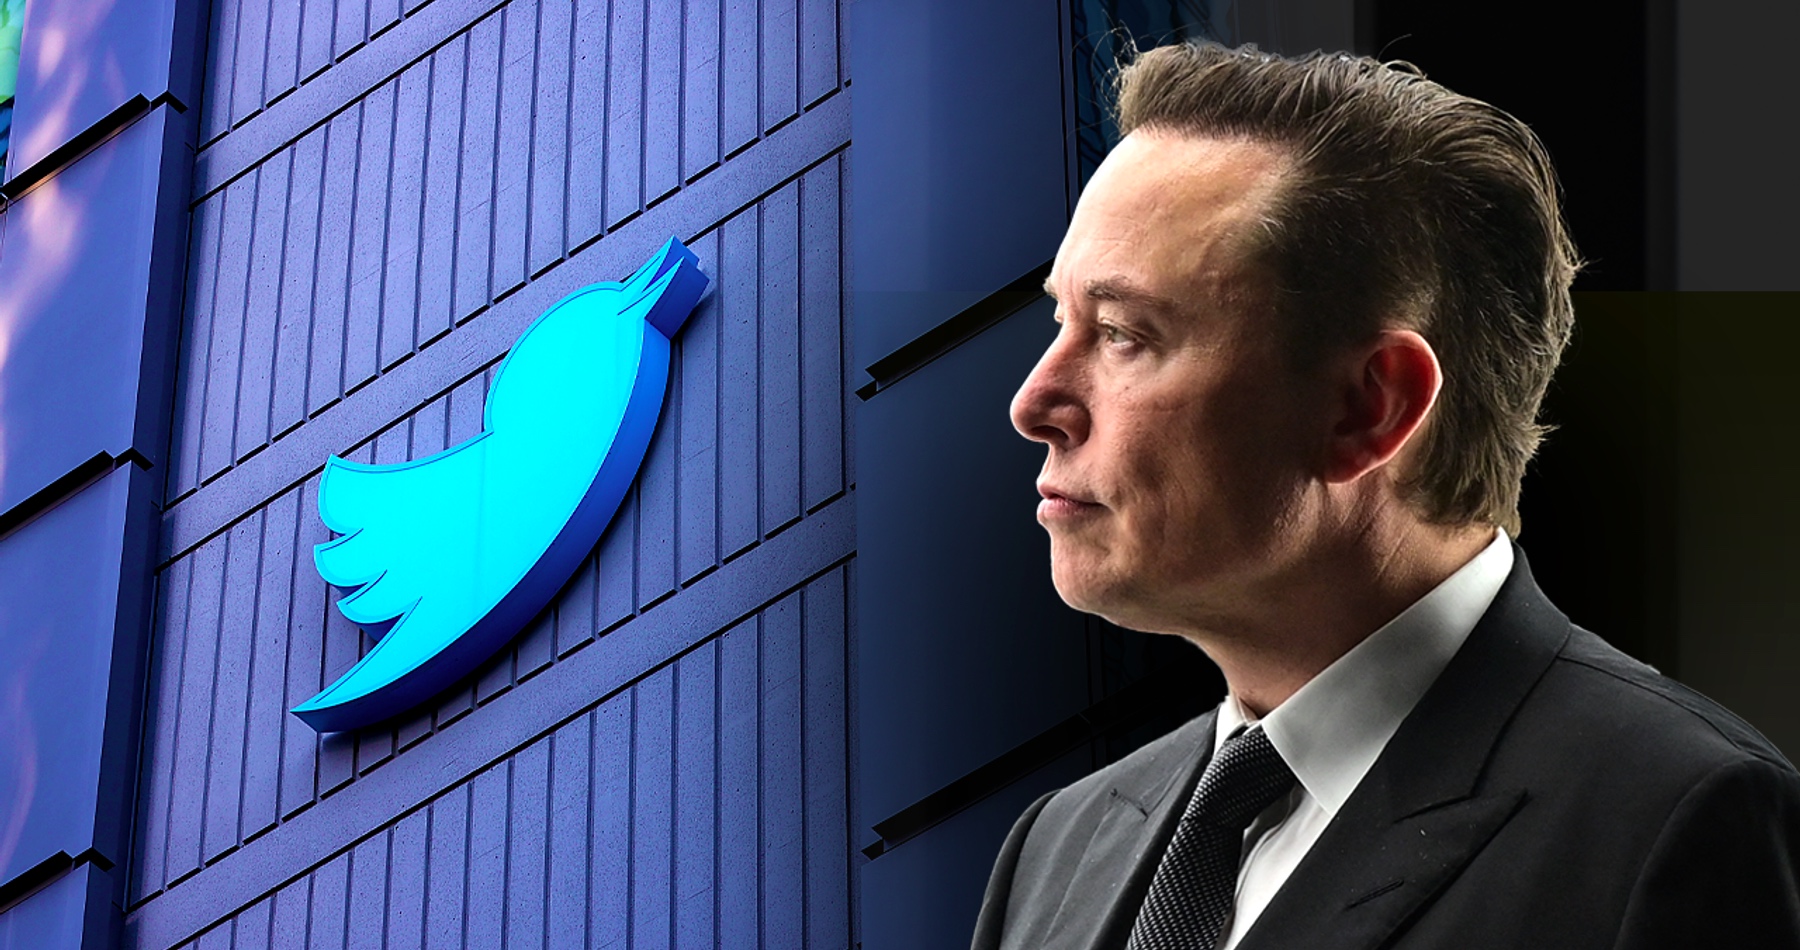 Elon Musk zveřejní interní dokumenty Twitteru o potlačování svobody. „Veřejnost to musí vědět“